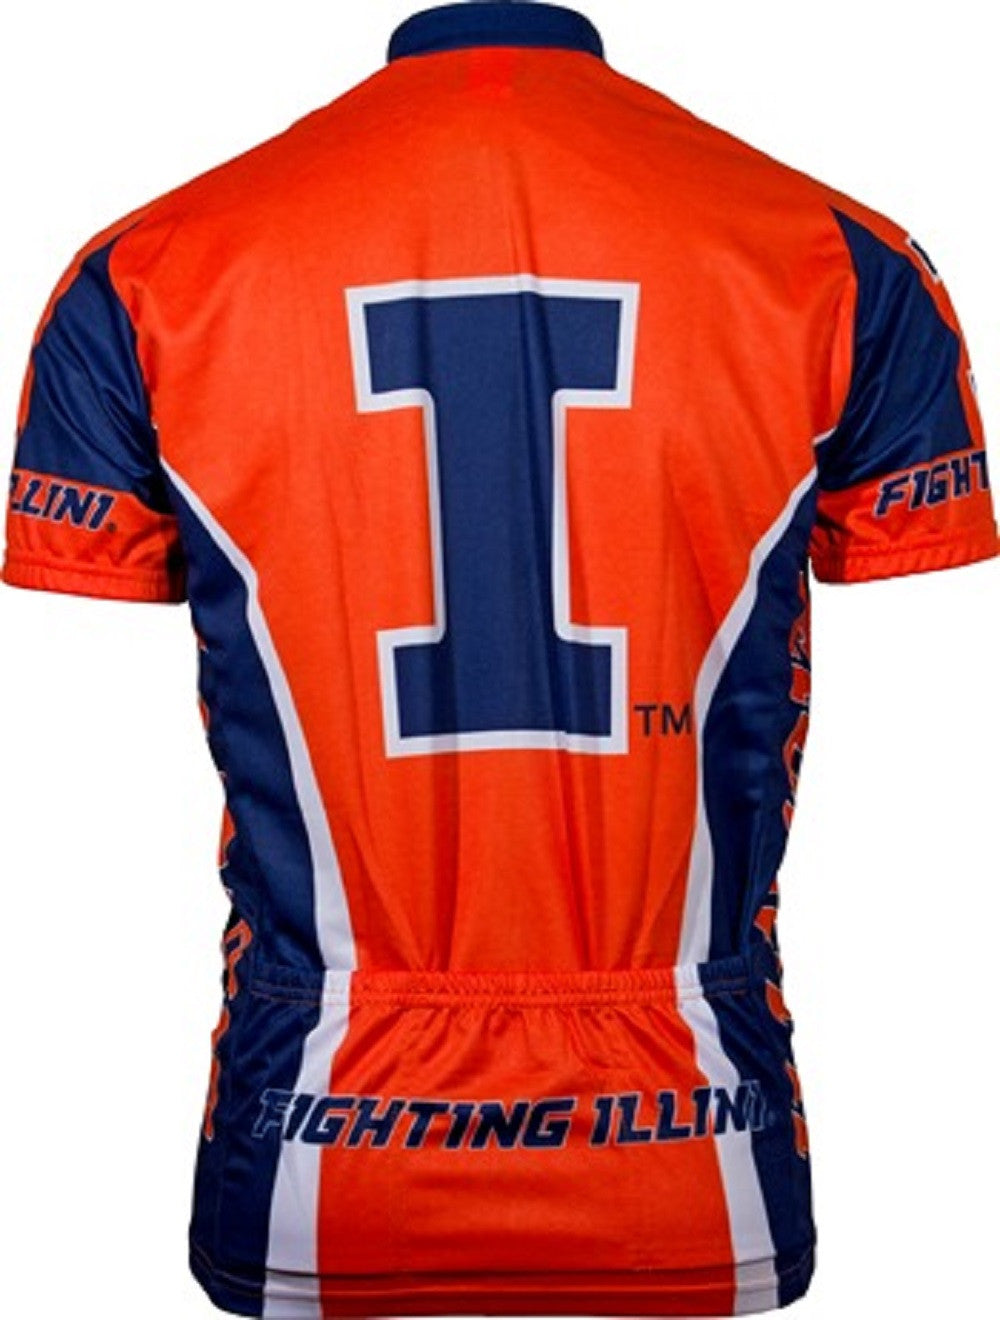 Illinois Fighting Illini Cycling Jersey (S, M, L, XL, 2XL, 3XL)